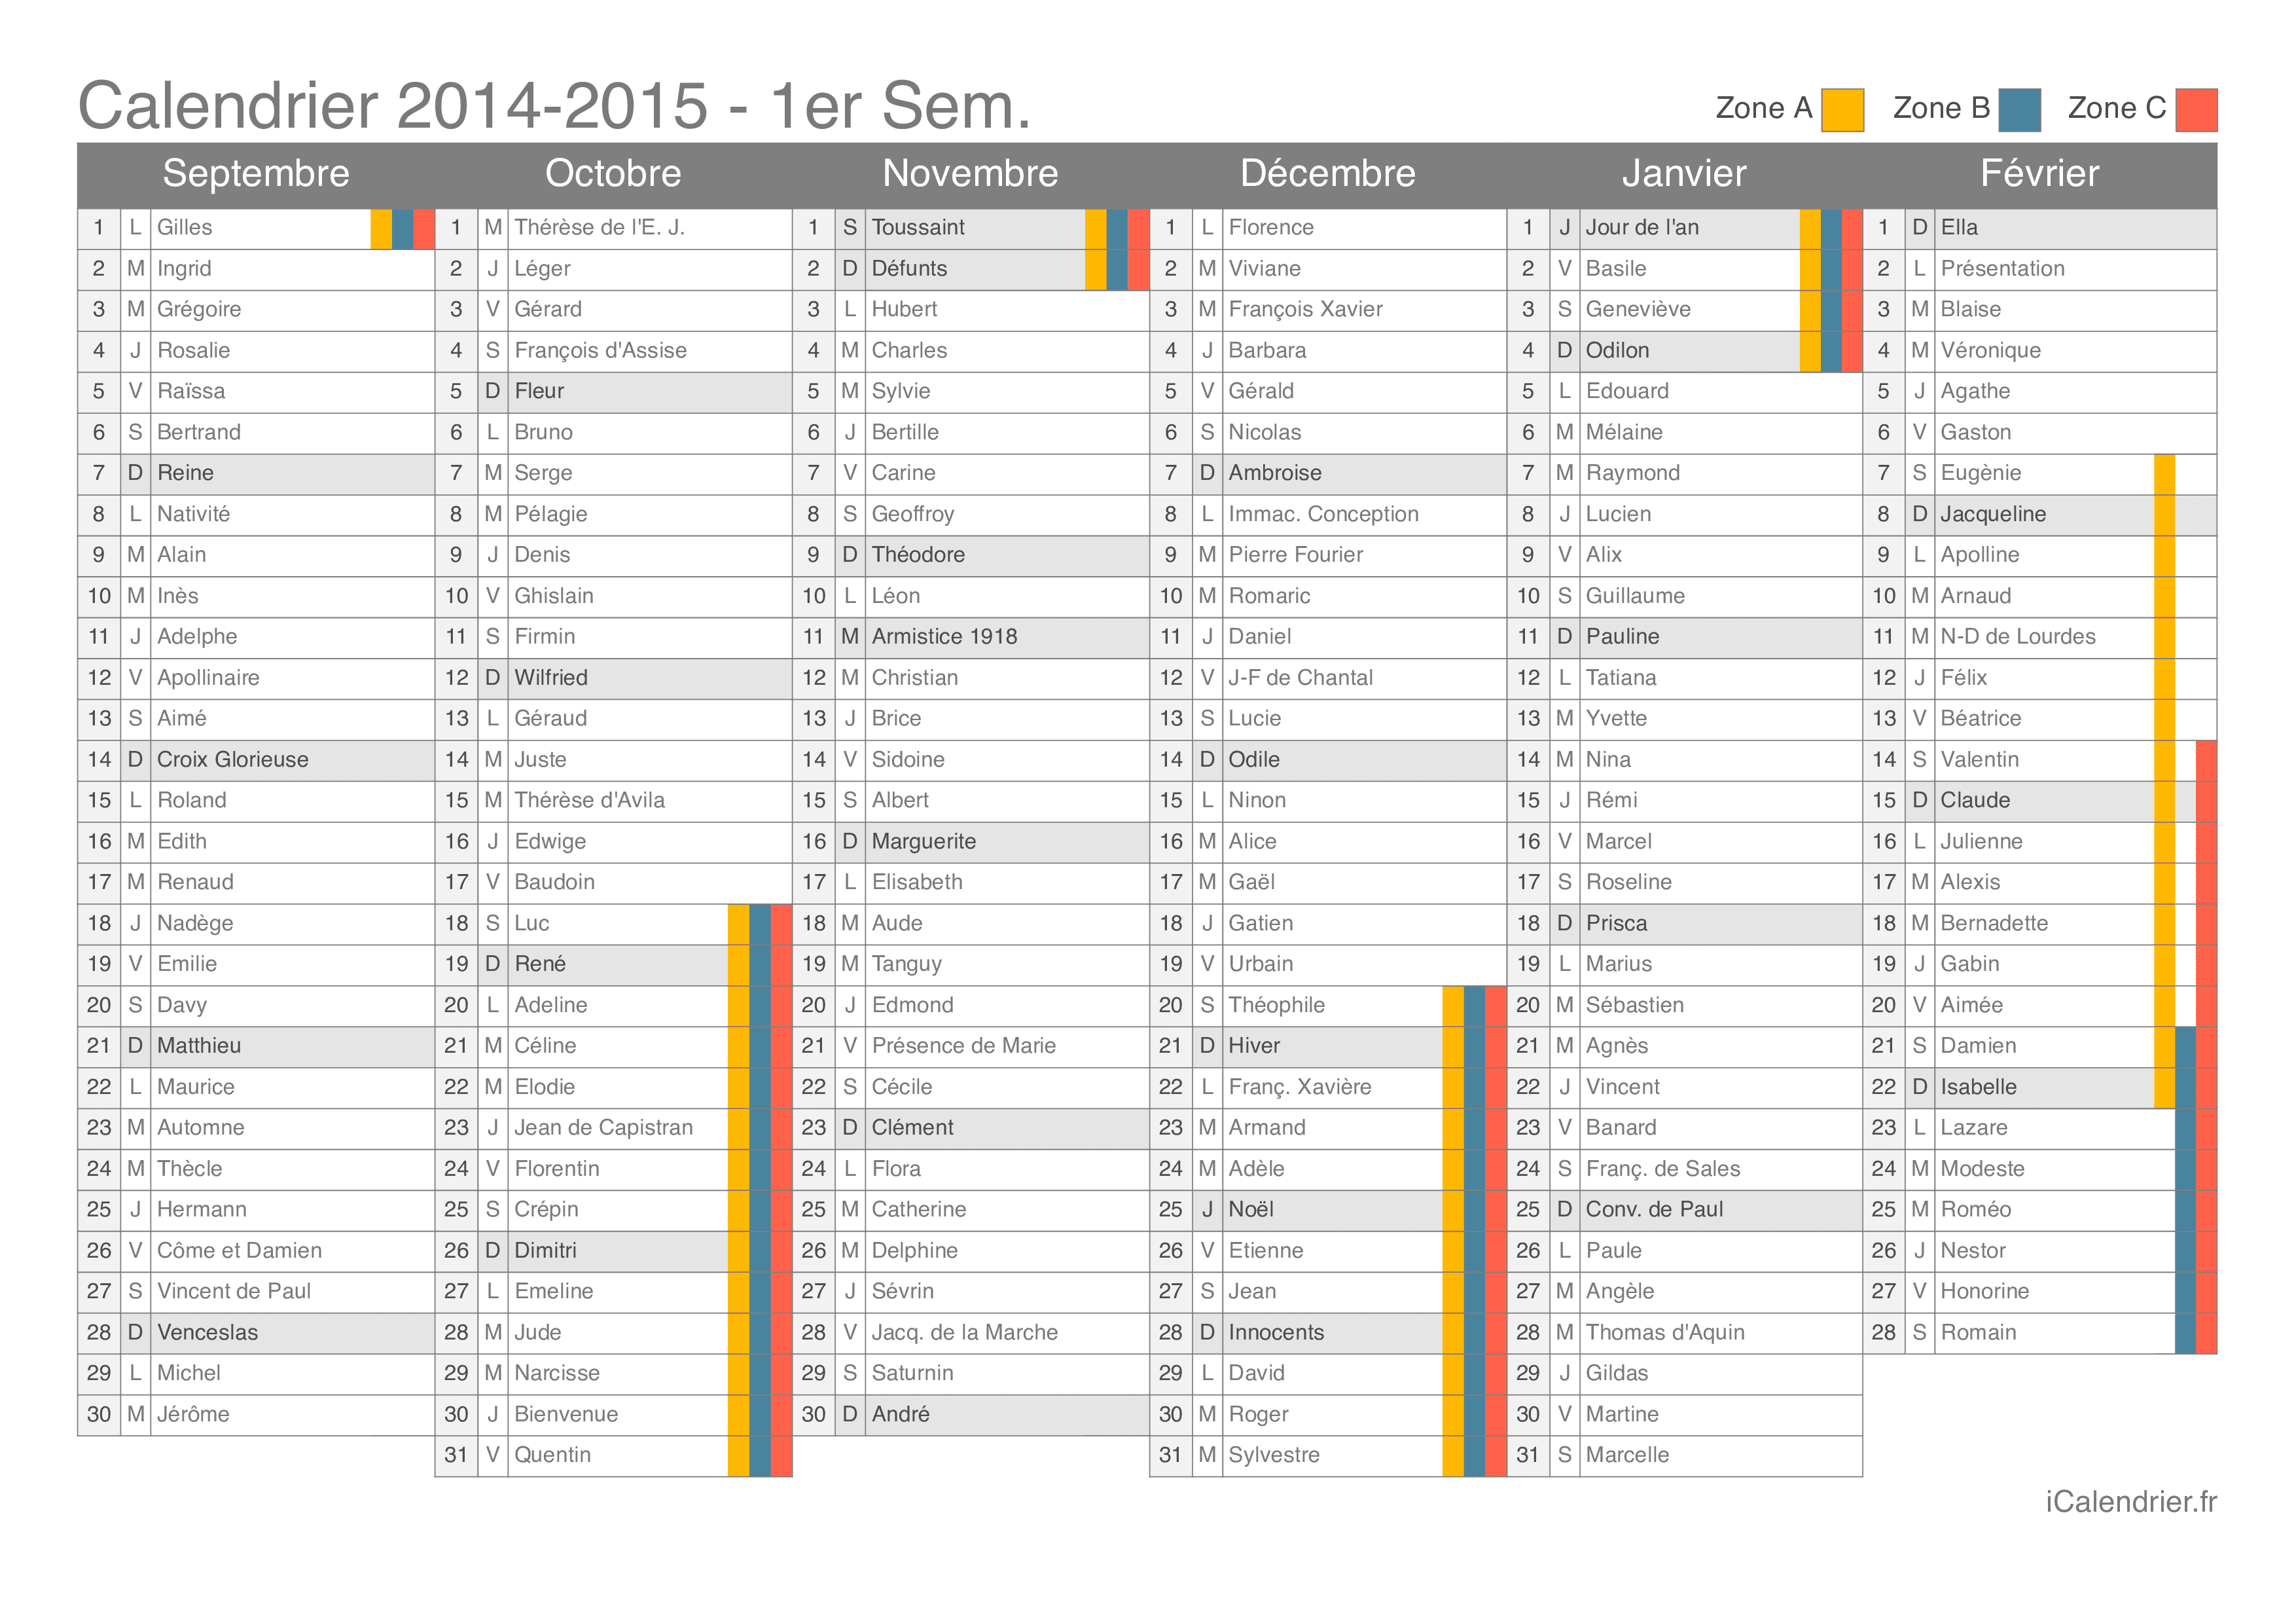 Vacances Scolaires 2014 2015 Calendriers Et Dates Icalendrier